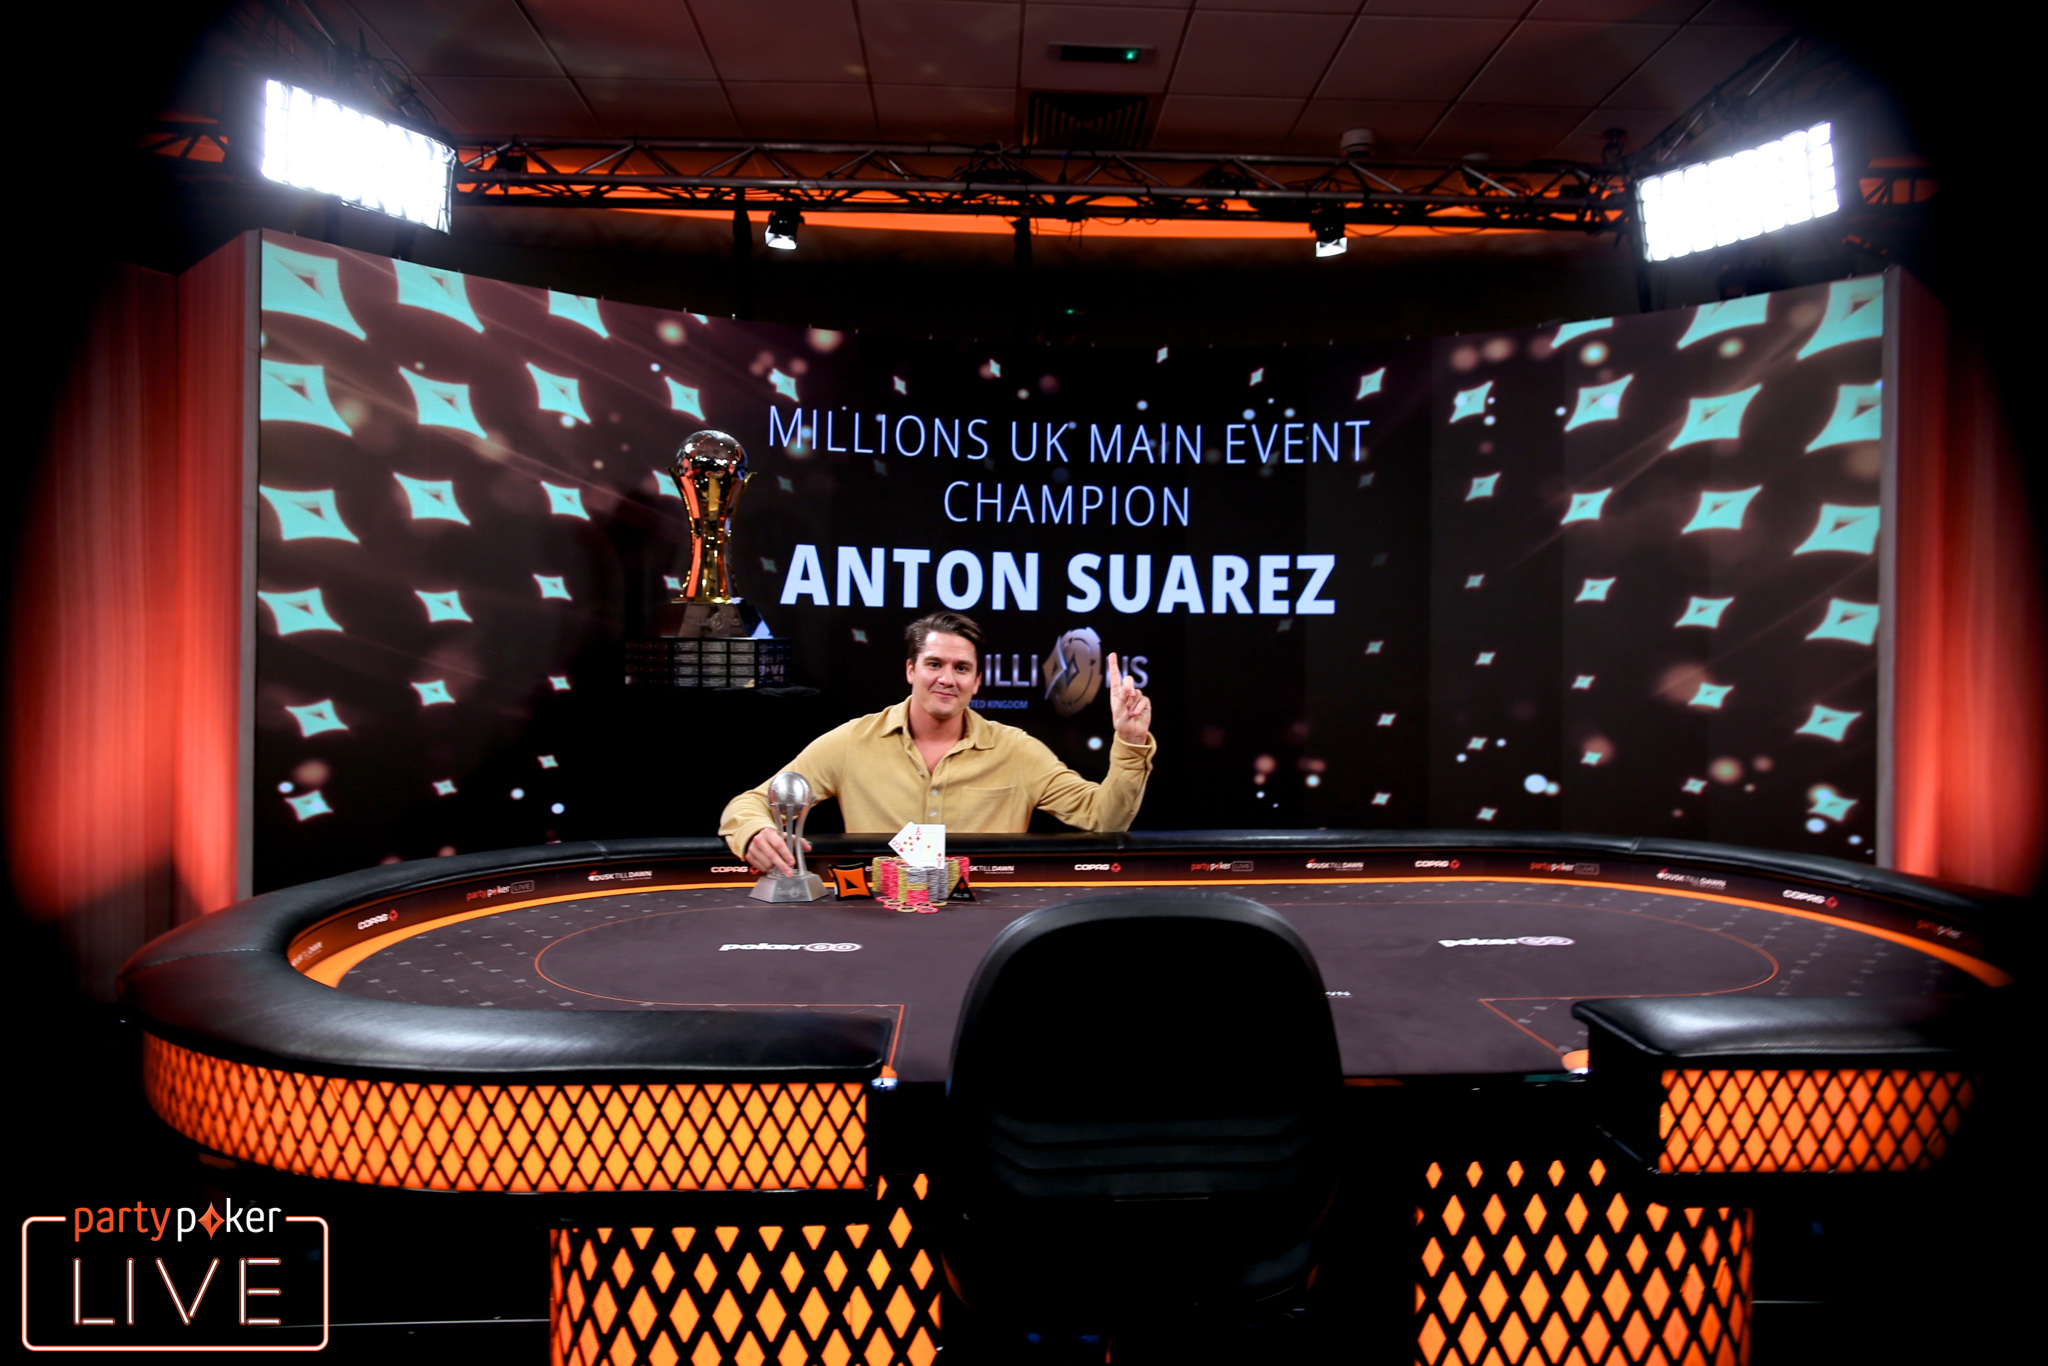 Anton Suarez